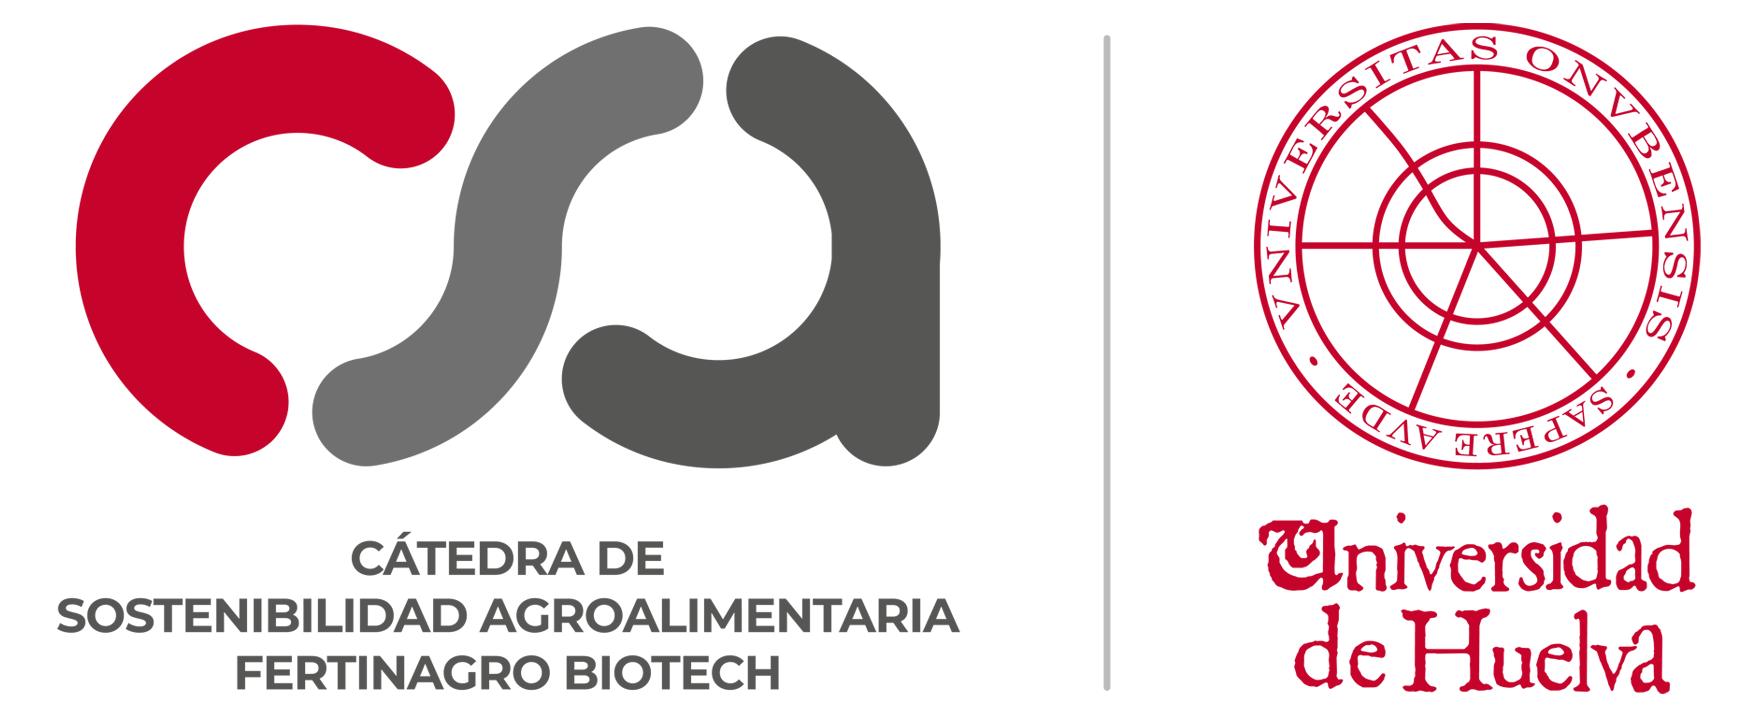 Cátedra Fertinagro Biotech